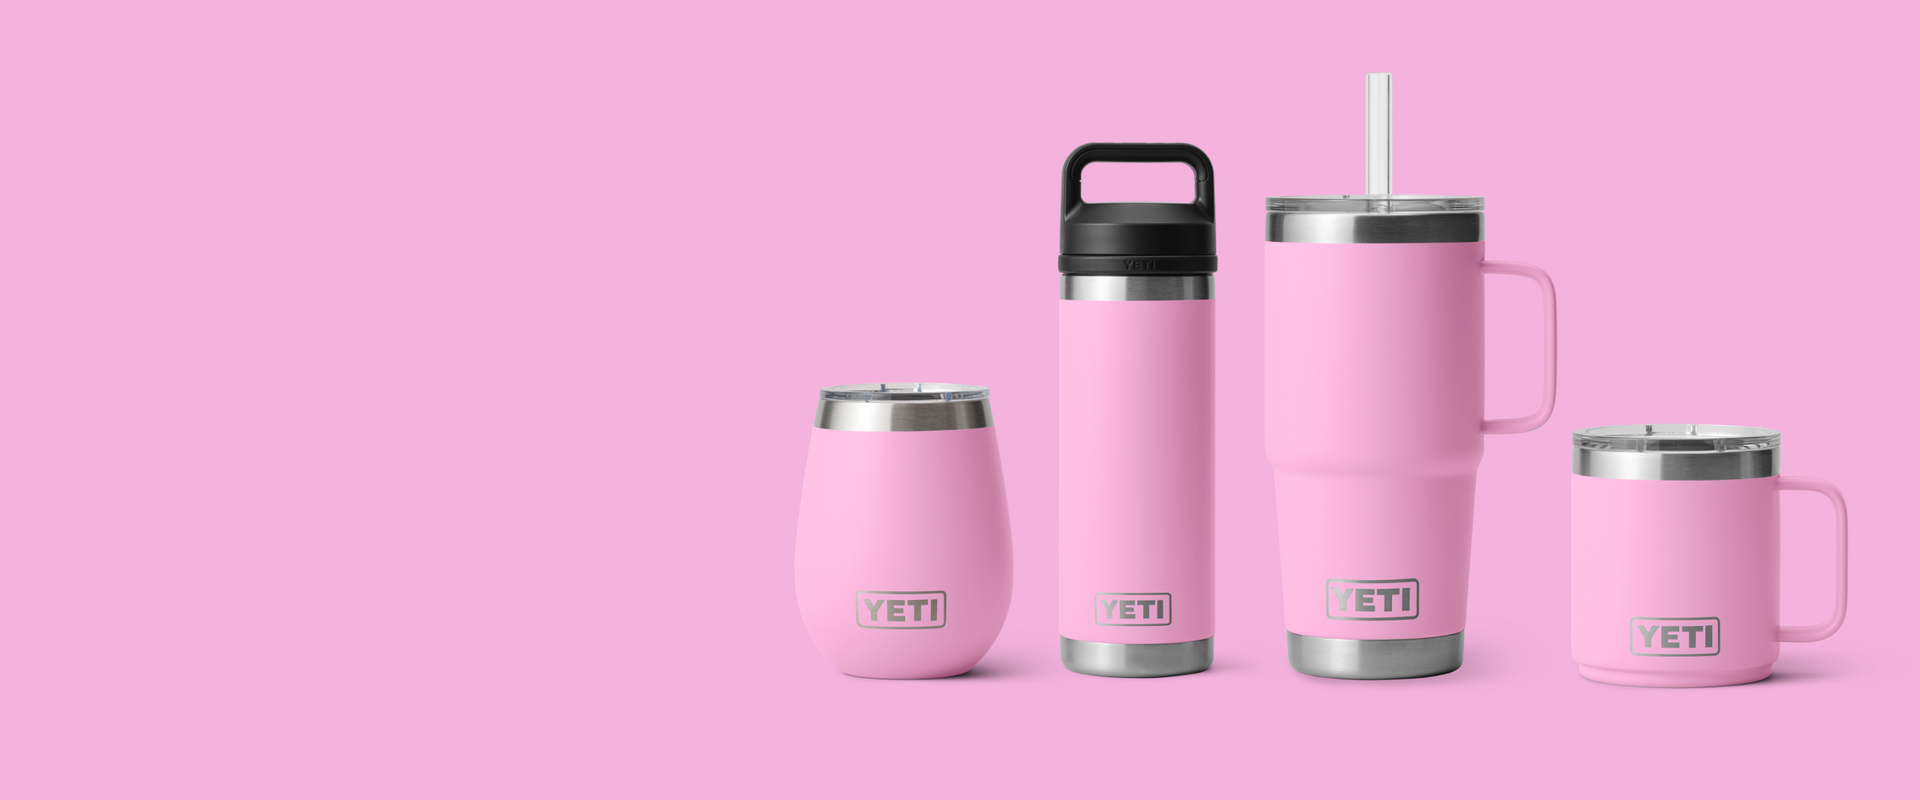 Power Pink Yeti : r/YetiCoolers